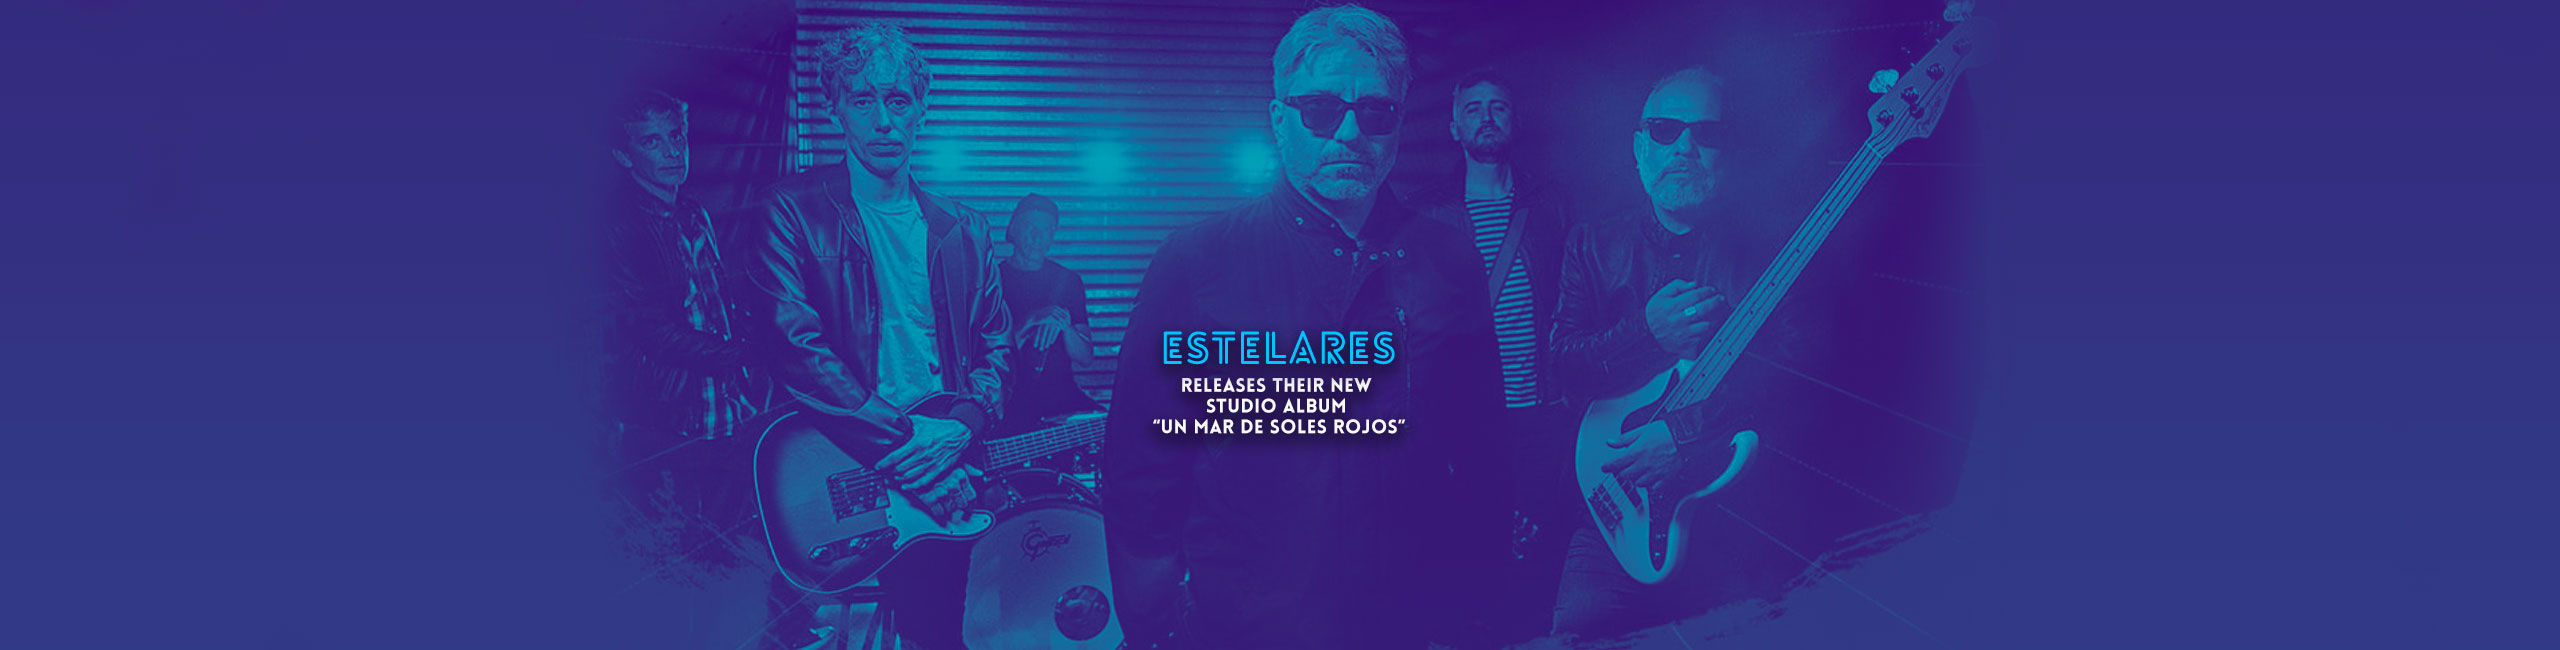 Estelares presenta su nuevo album de estudio “un mar de soles rojo”